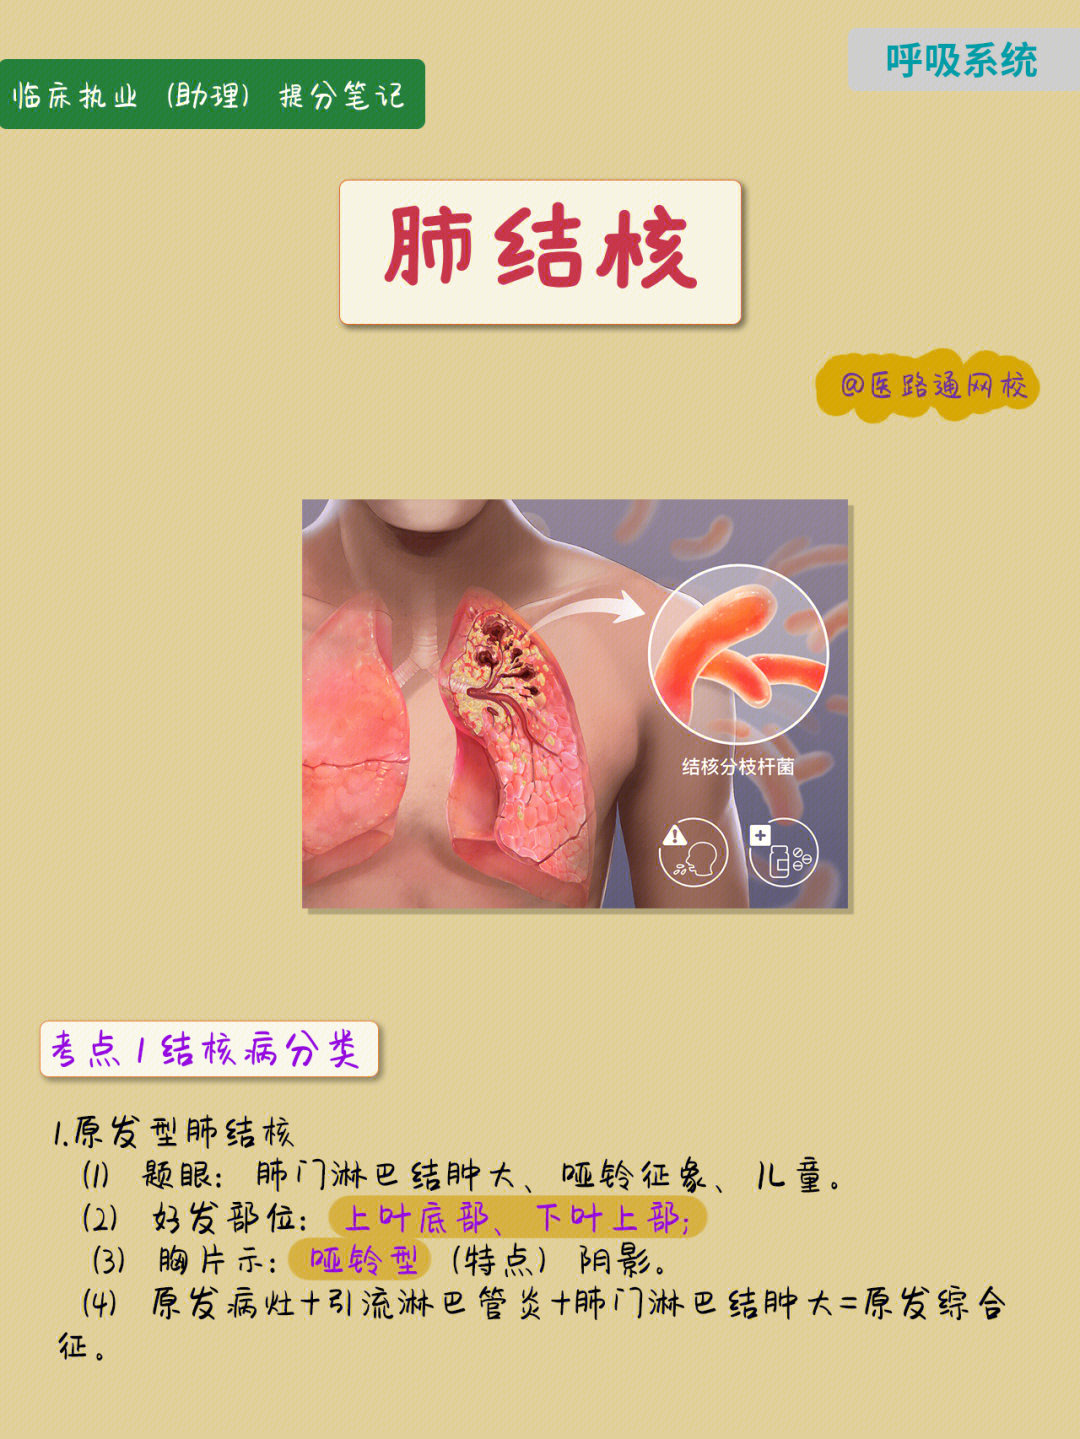 原发型肺结核(1)题眼:肺门淋巴结肿大,哑铃征象,儿童